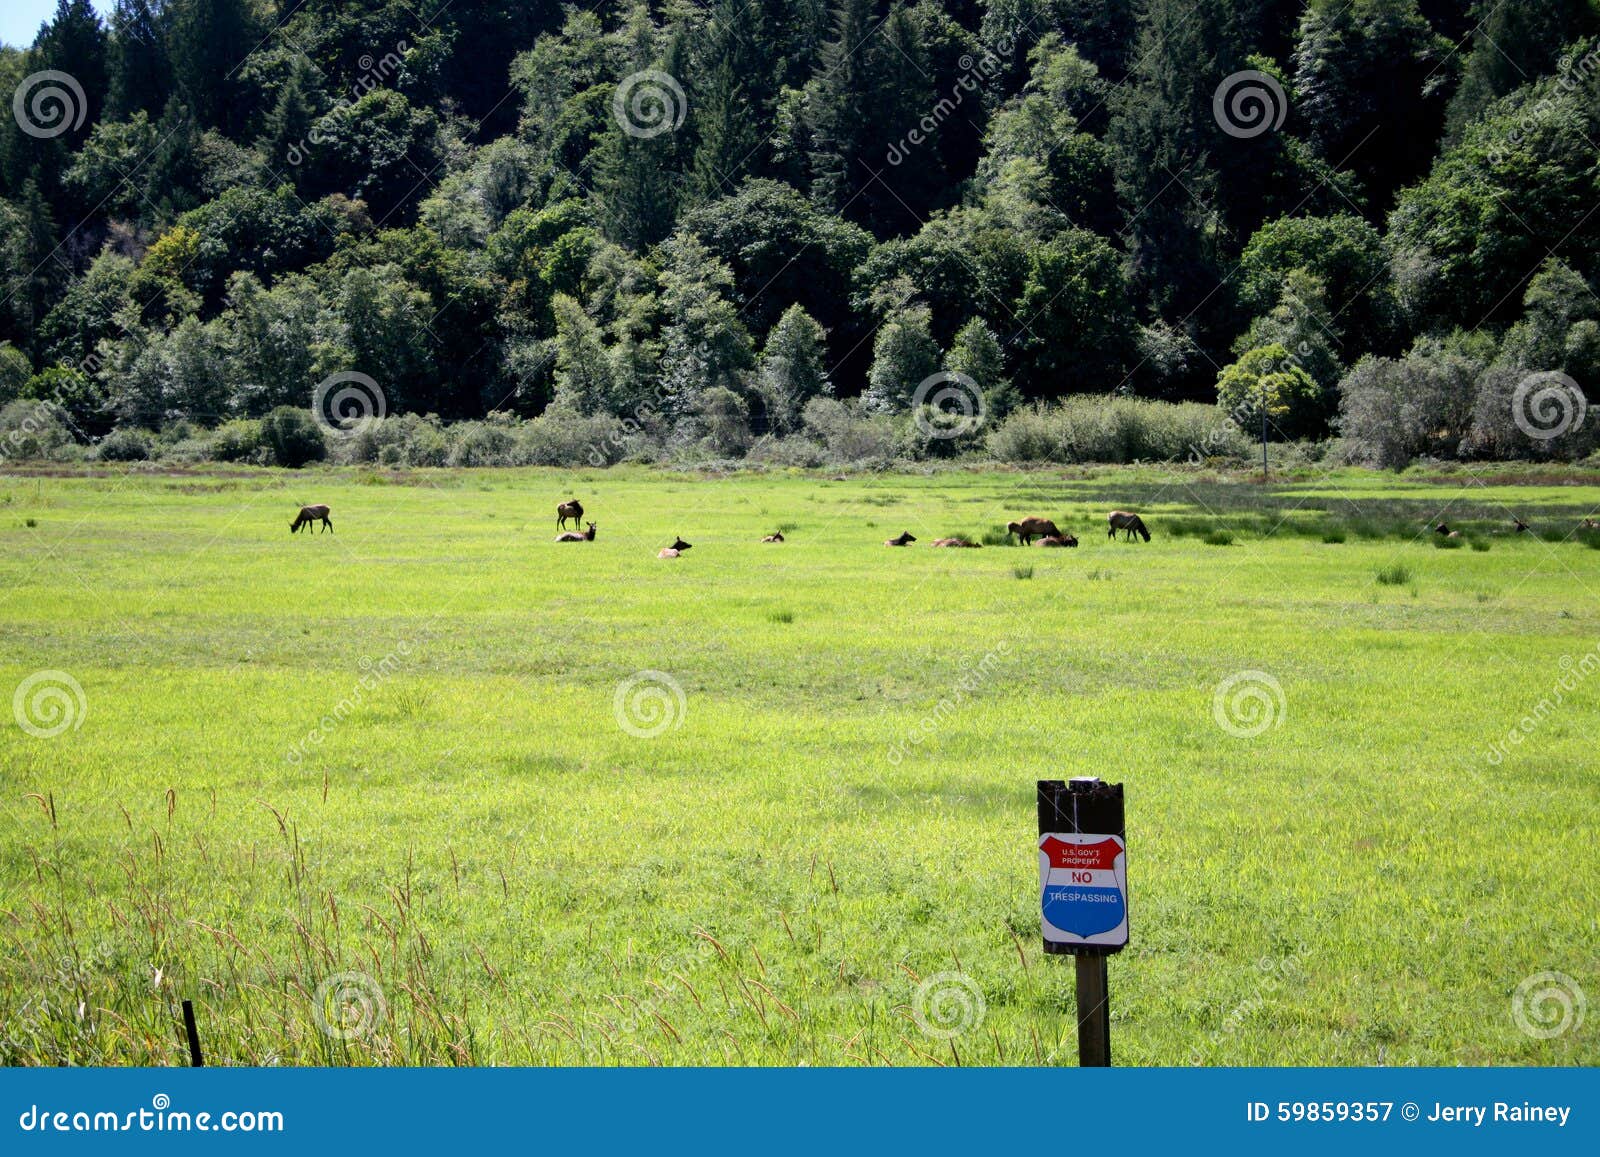 herd of roosevelt elk cows with no trespass sign